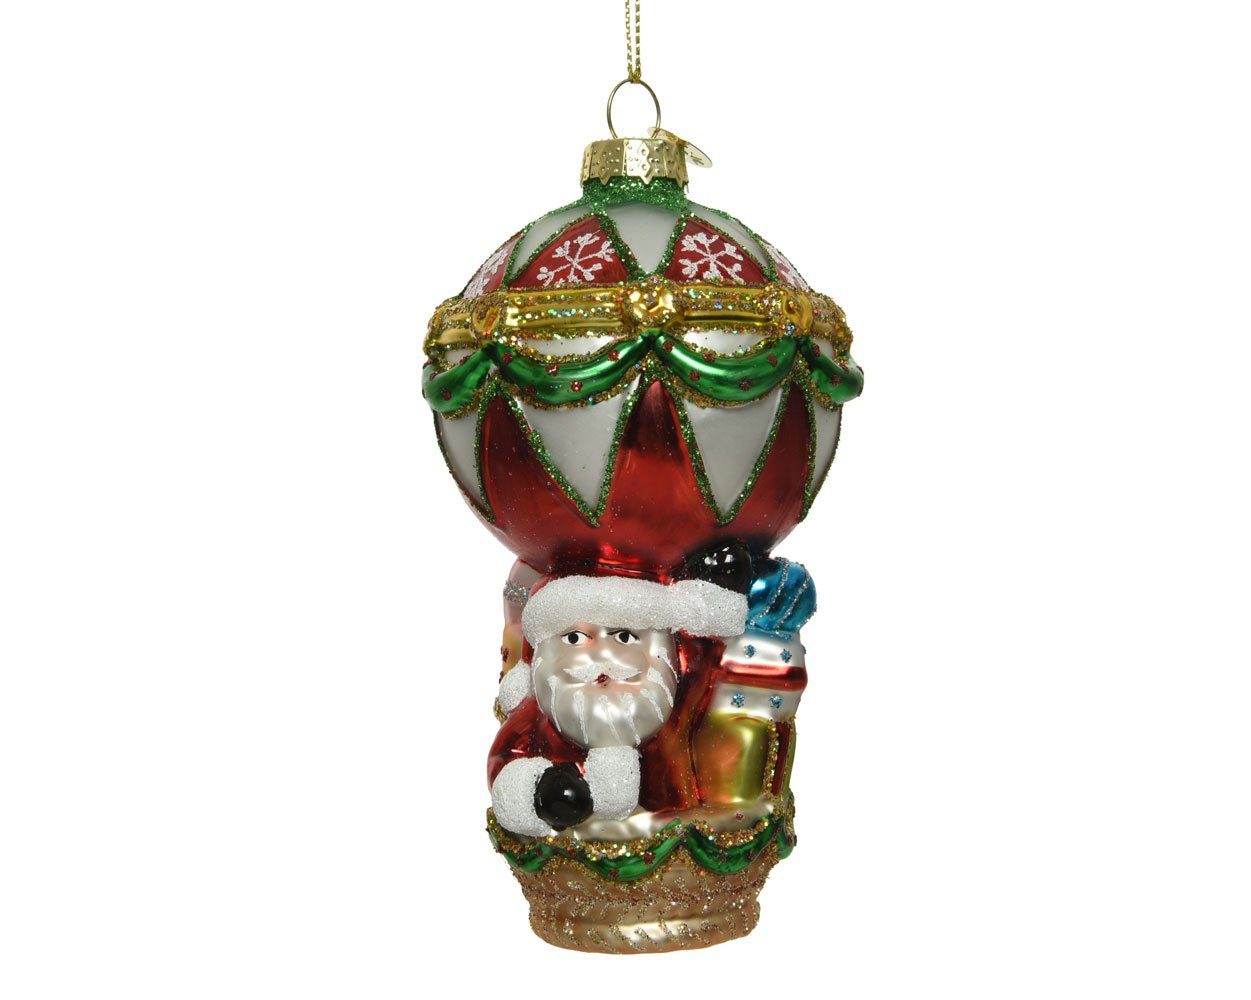 Decoris season decorations Christbaumschmuck, Christbaumschmuck Glas Weihnachtsmann im Heißluftballon 13cm bunt